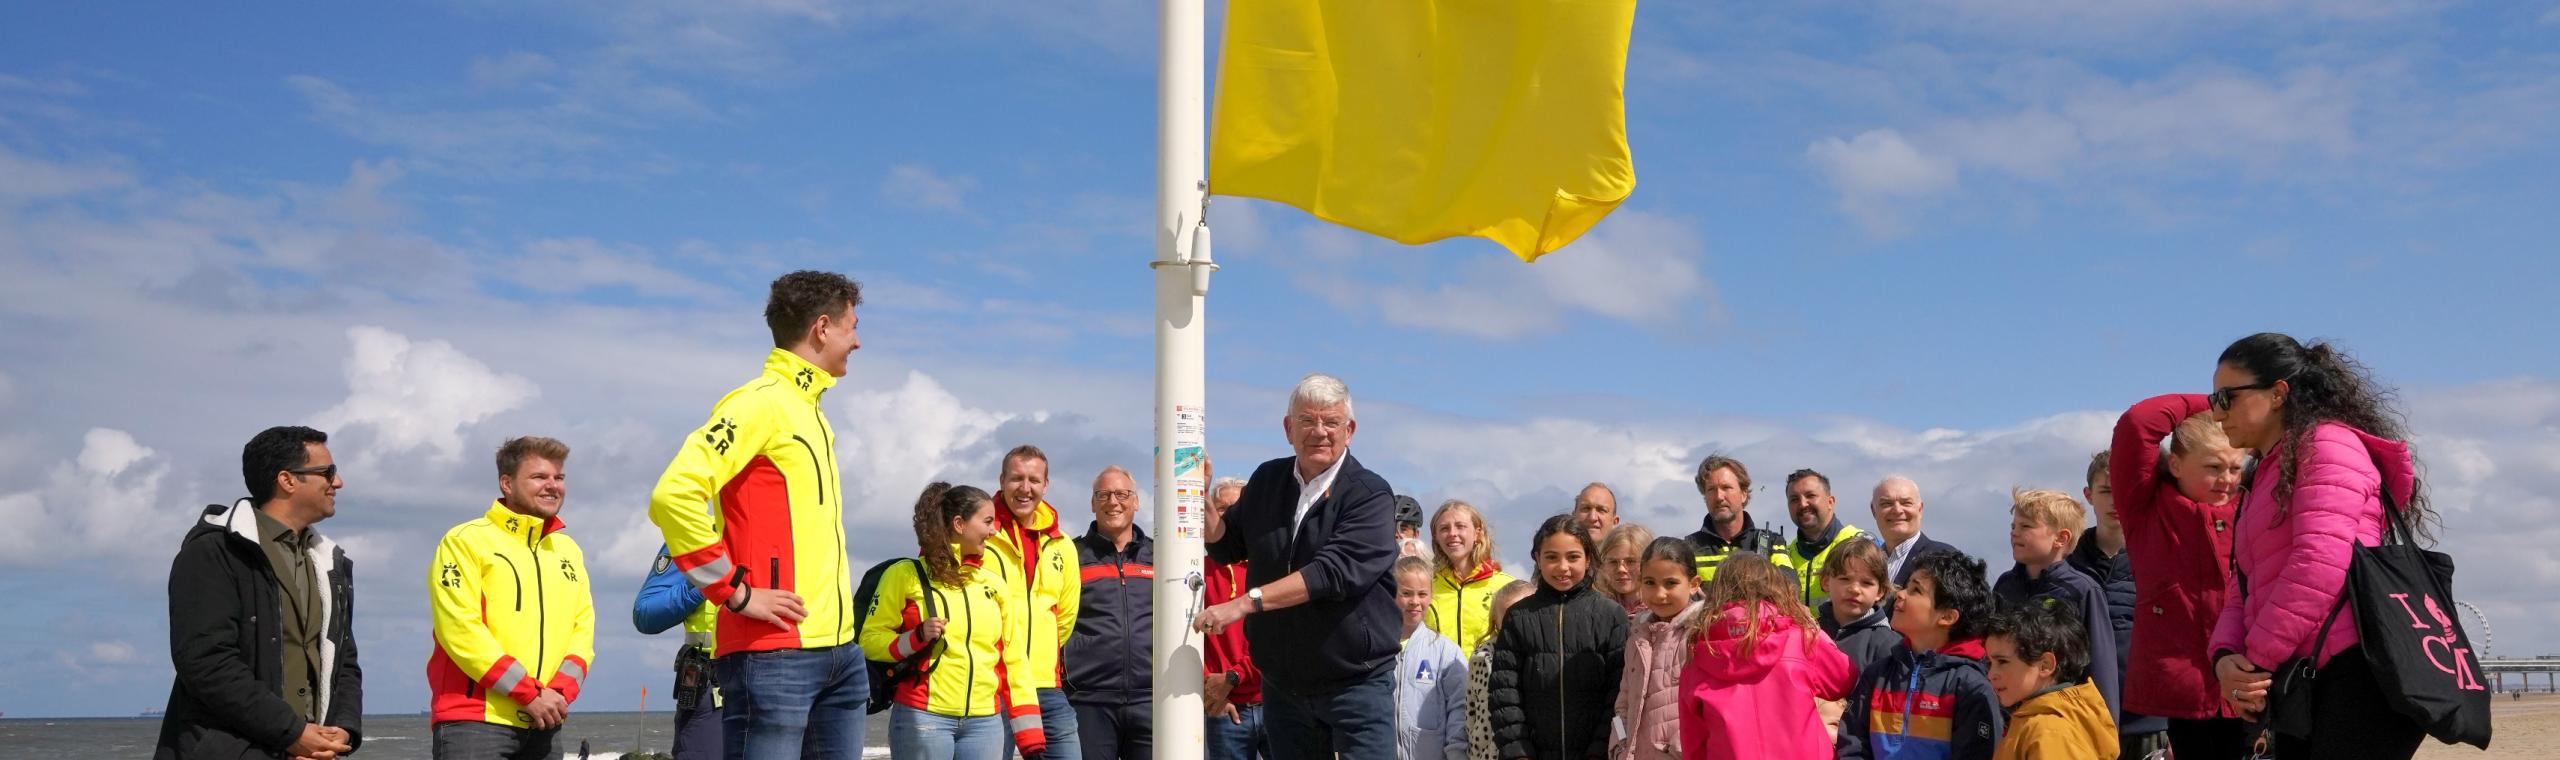 Burgemeester van Zanen hijst samen met de hulpdiensten de rood-gele vlag